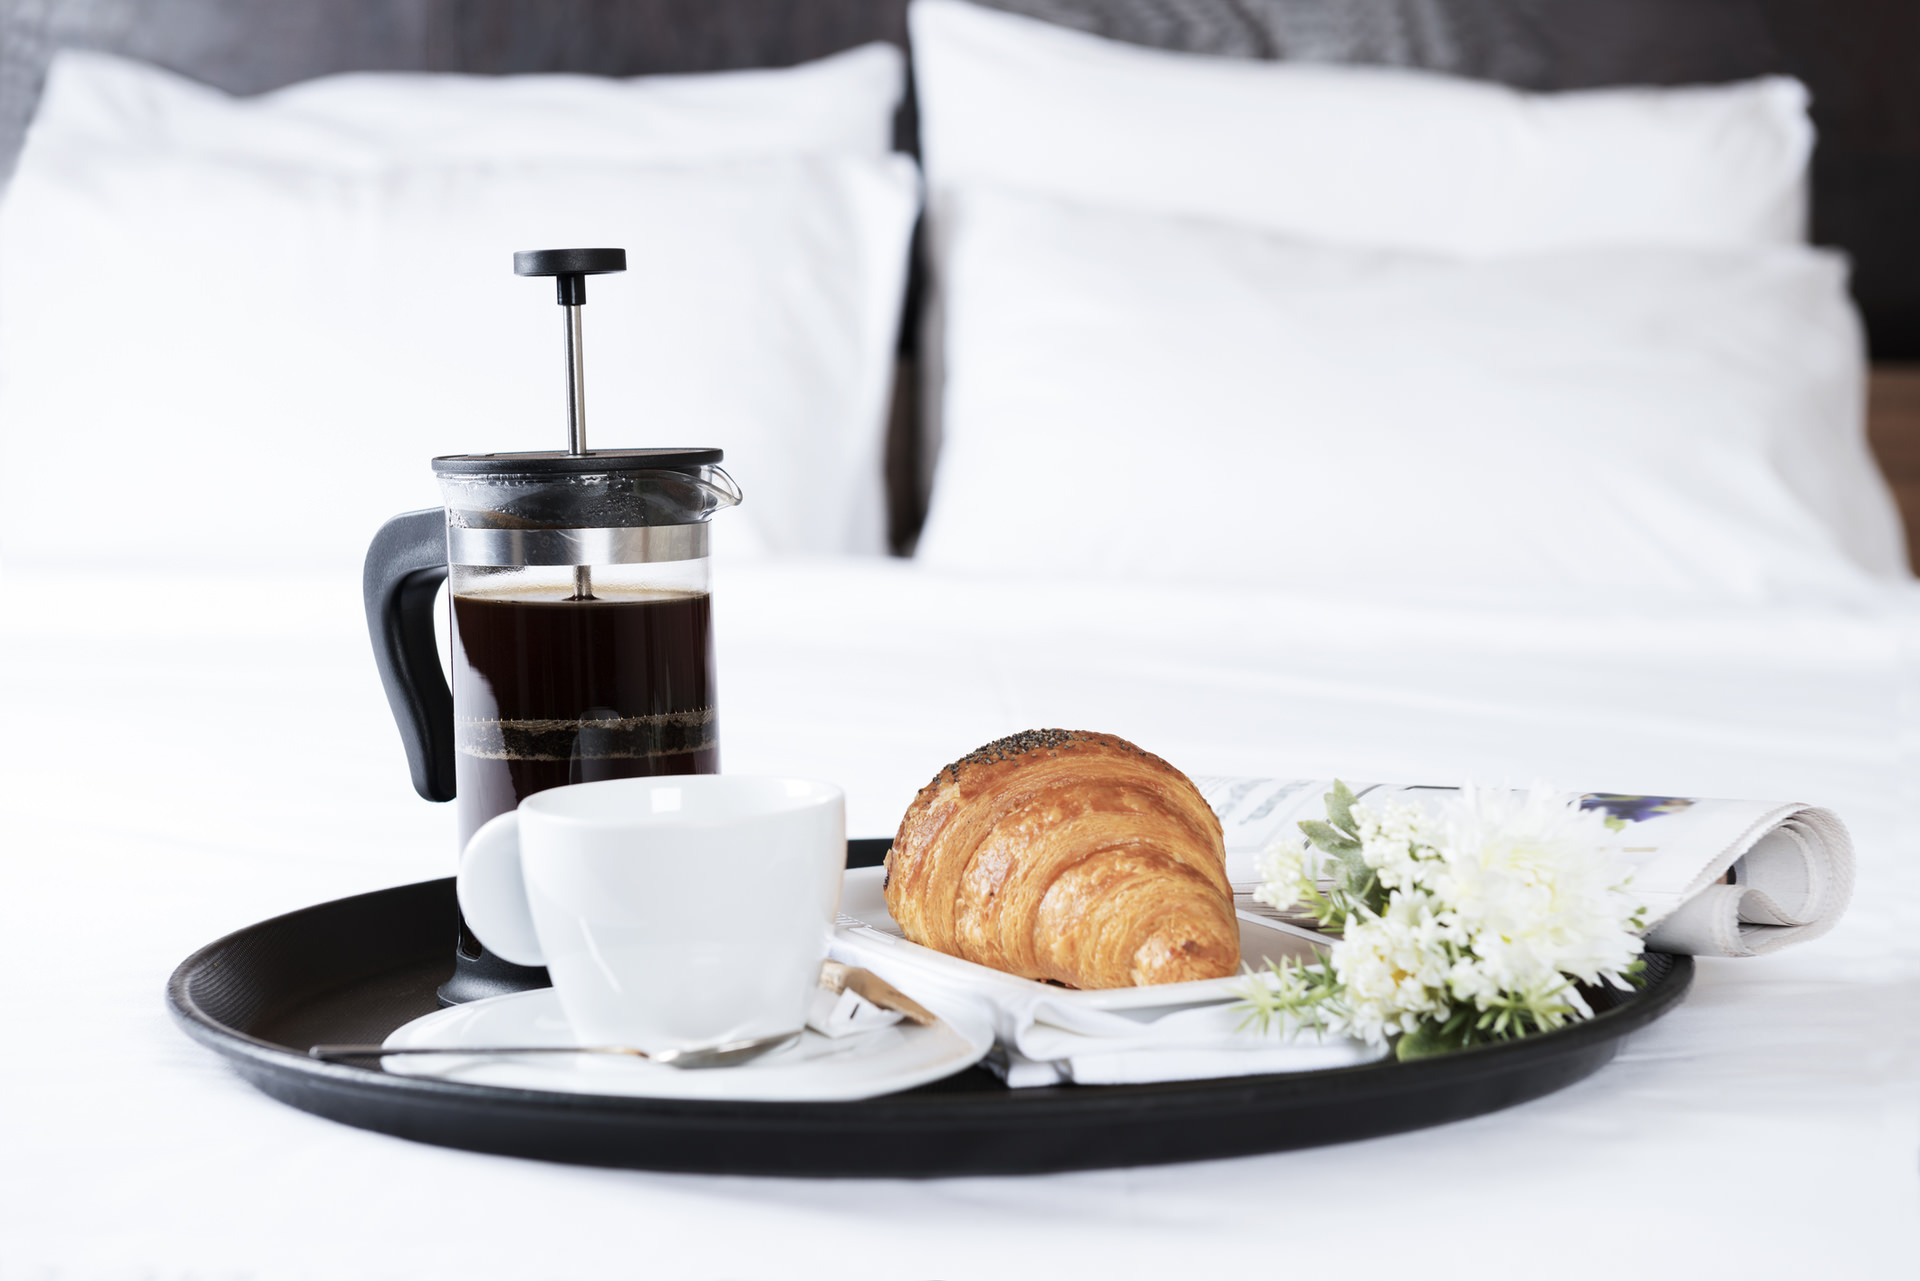 Пресс завтрак. Room service Сток. Изысканный завтрак в постель. Подставка для кофе в постель. Кофе в постель на прозрачном фоне.